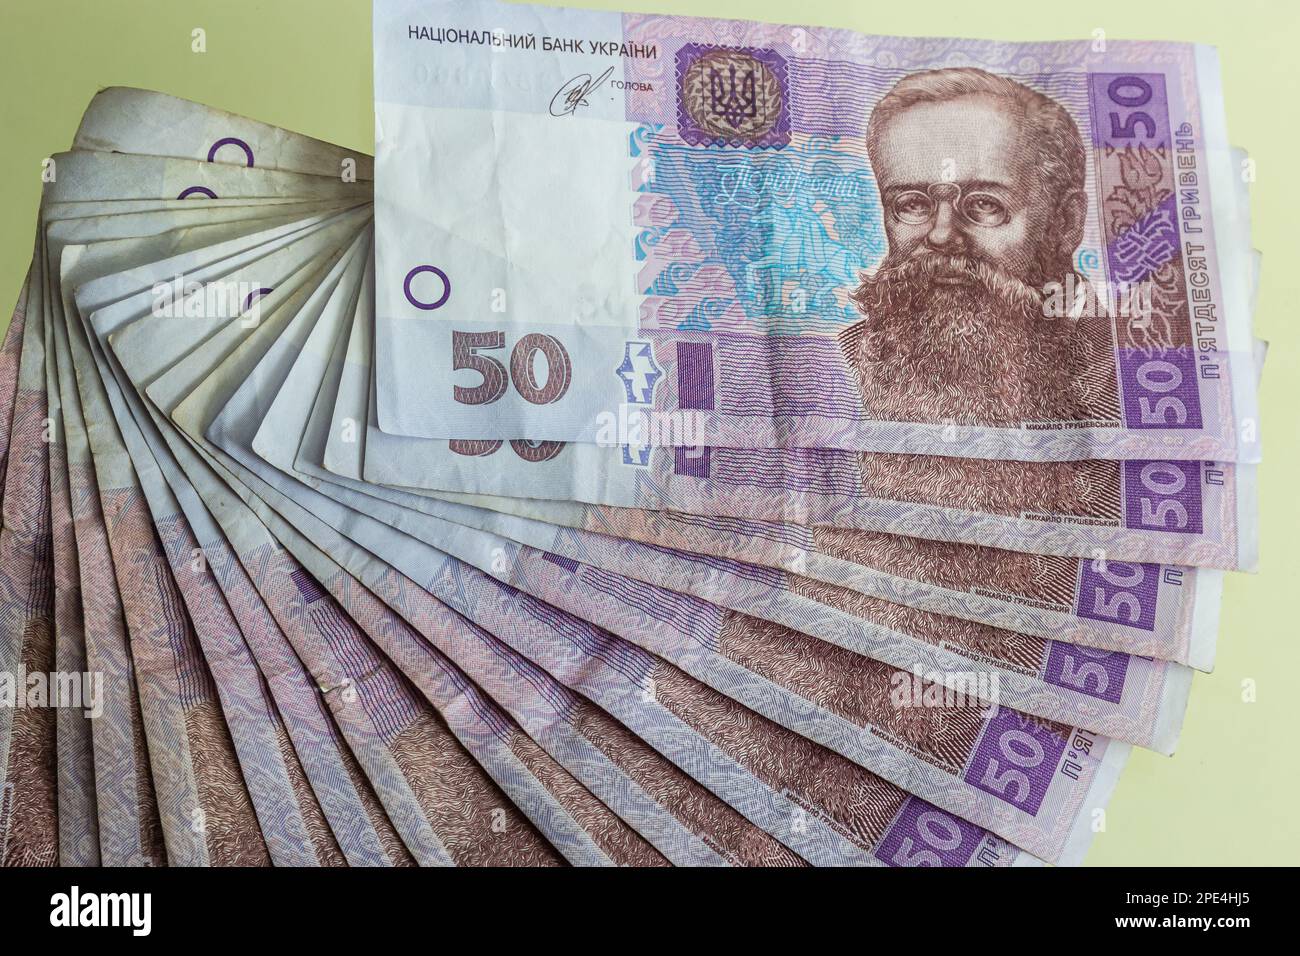 El papel moneda ucraniano se presenta sobre un fondo azul. billetes de 50 hryvnia. Foto de stock